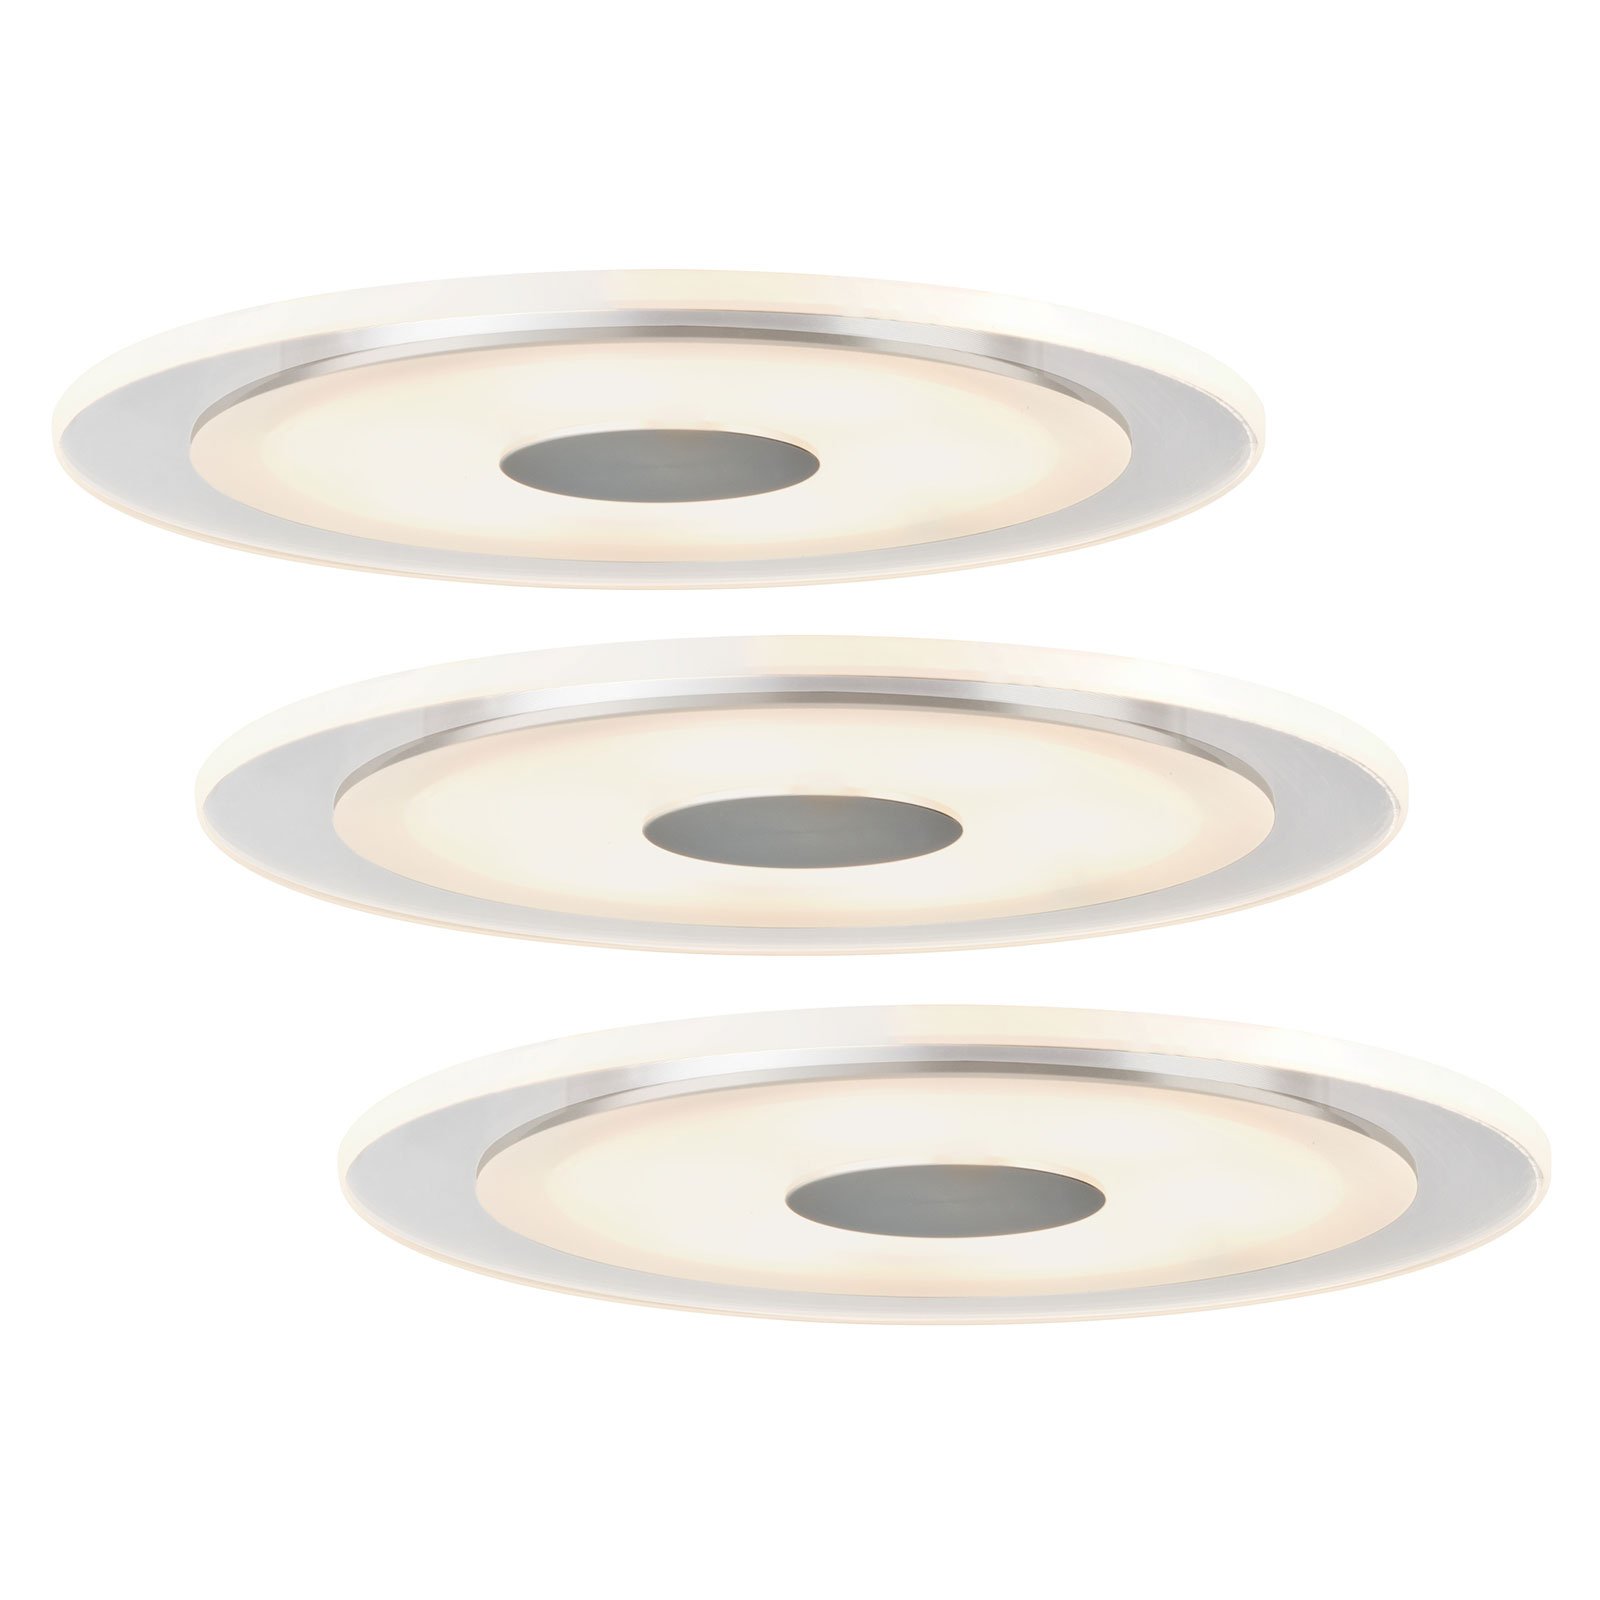 Paulmann Premium Line Whirl LED лампа за вграждане, 3 броя